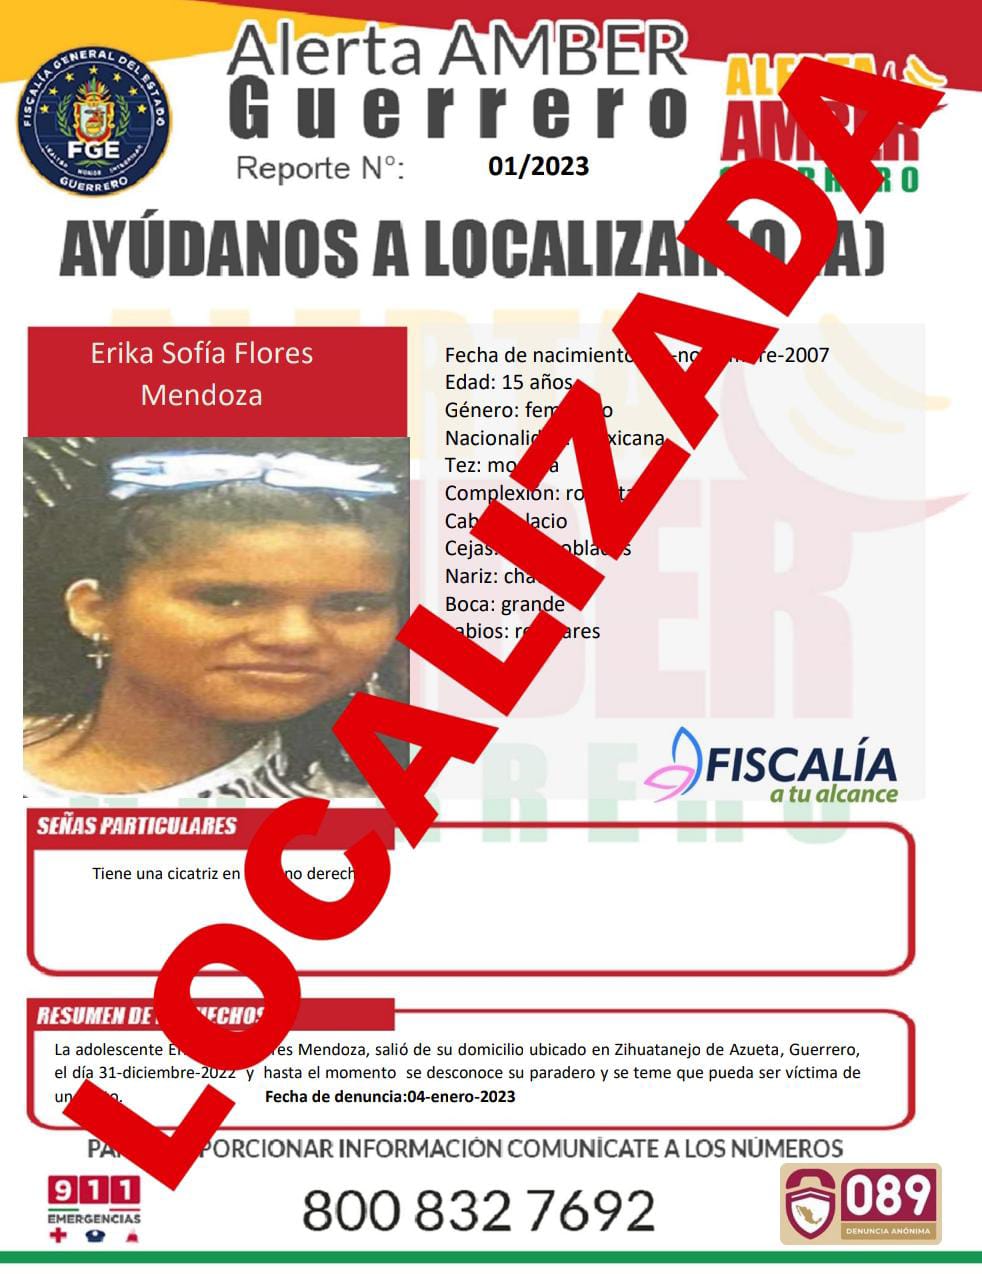 Erika Sofía Flores Mendoza Ya Fue Localizada.